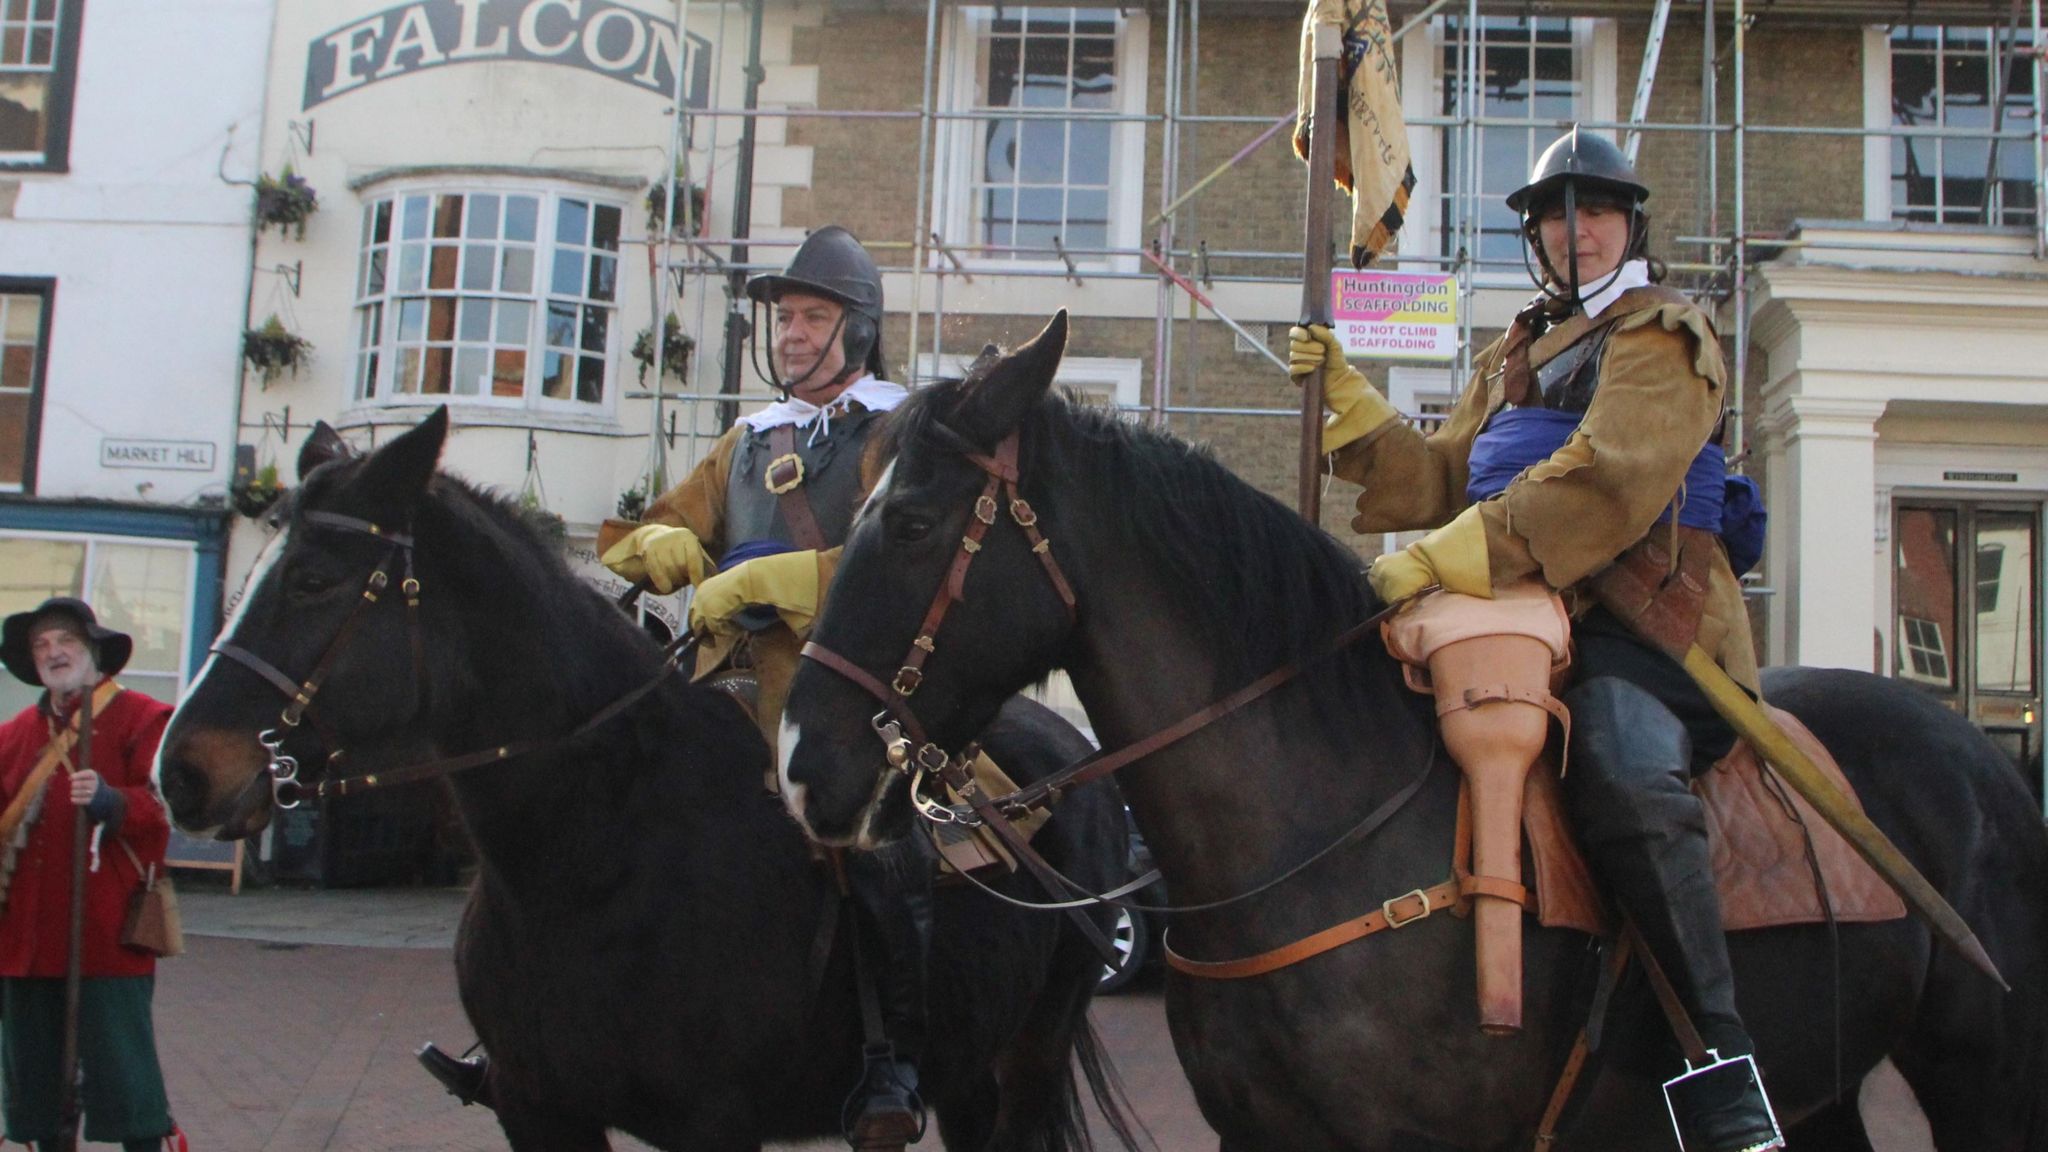 Parliamentarian Civil War re-enactors on horseback in Huntingdon